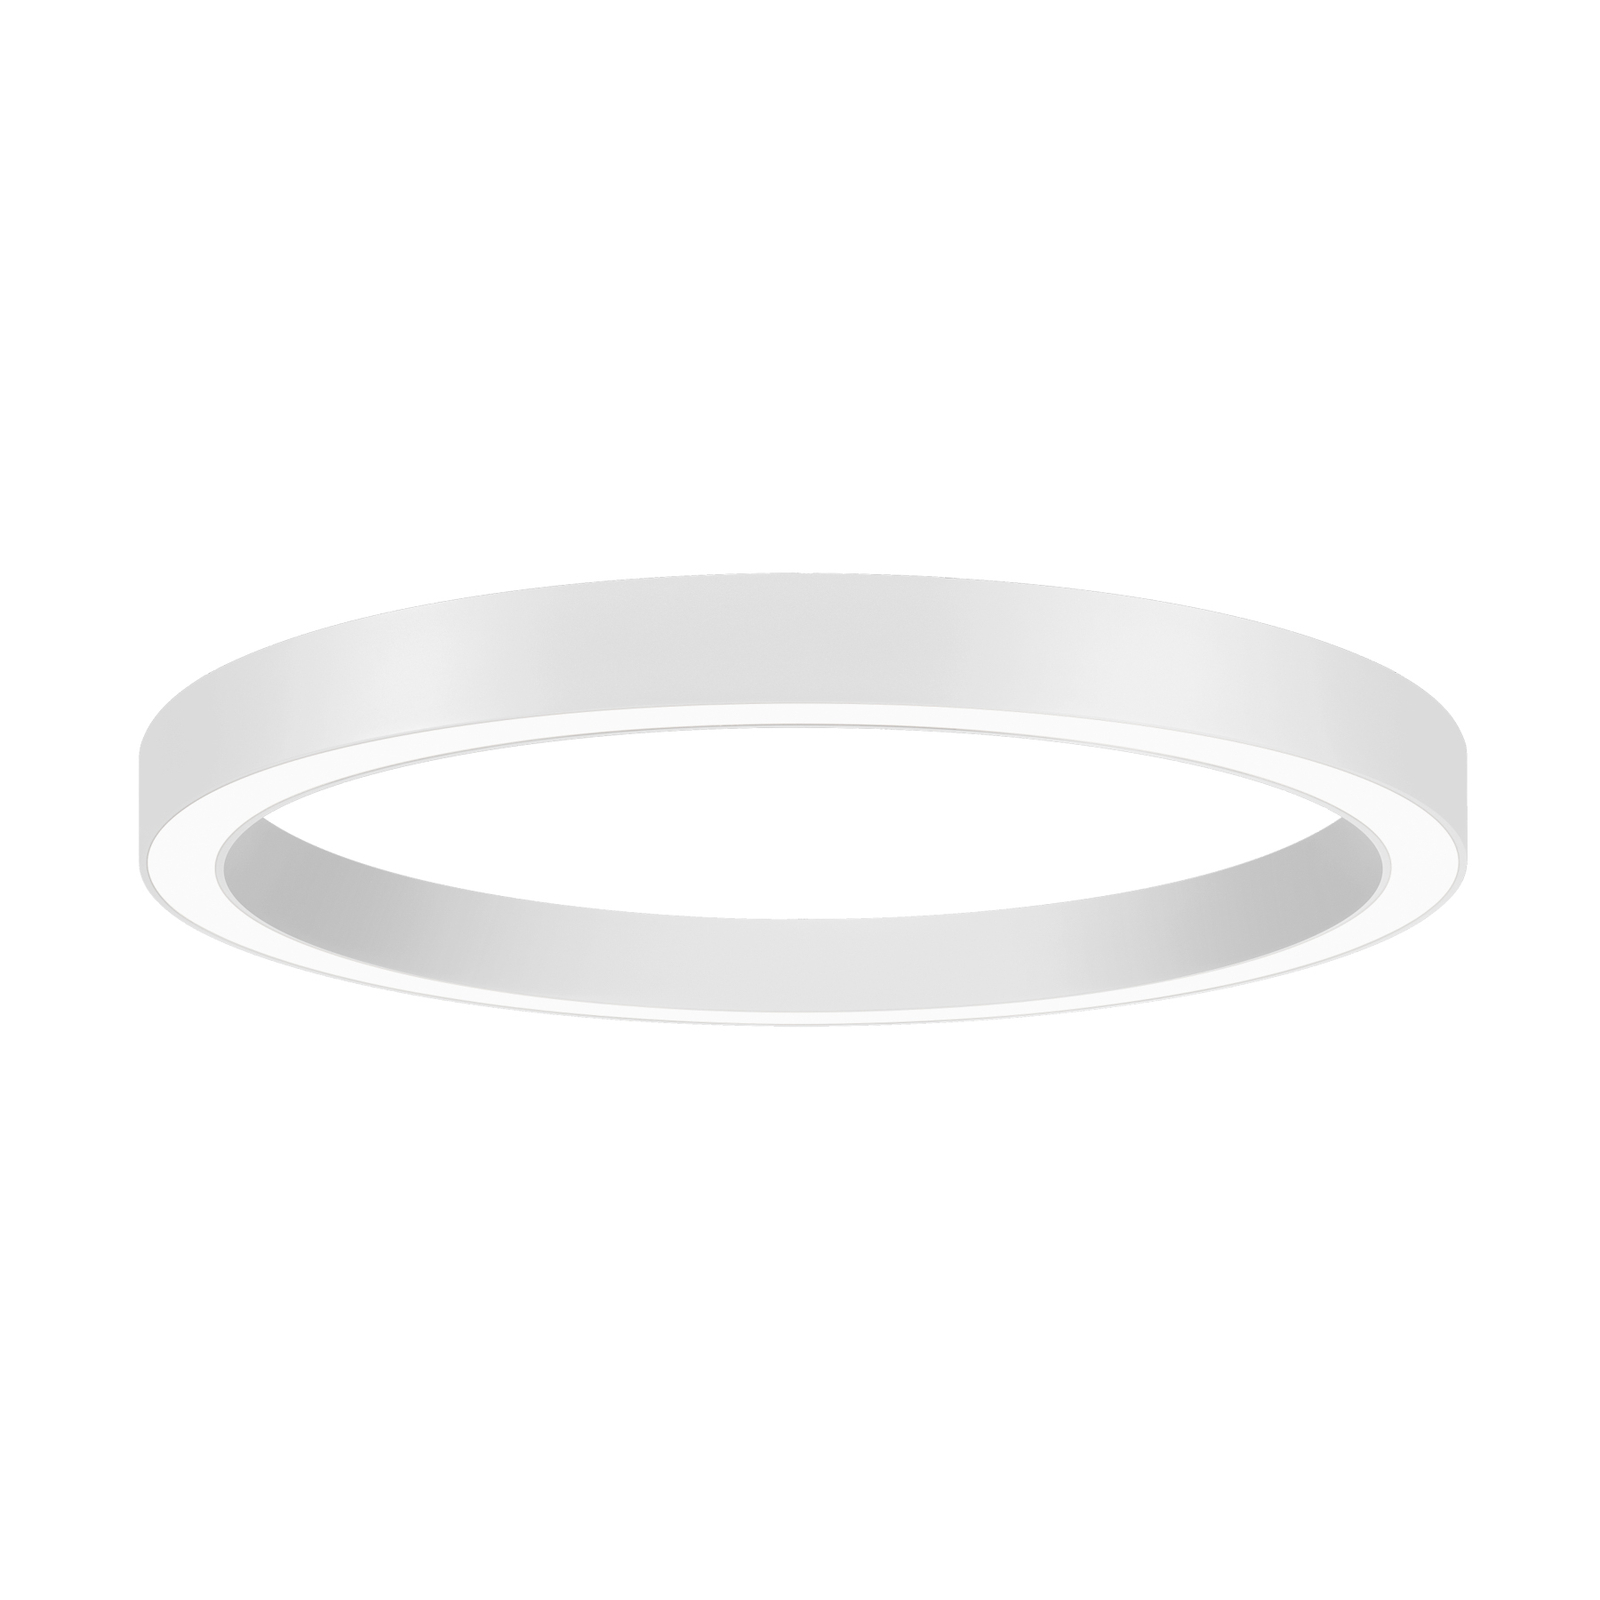 BRUMBERG Biro Circle Ring,  Ø 60 cm, Casambi, weiß, 830